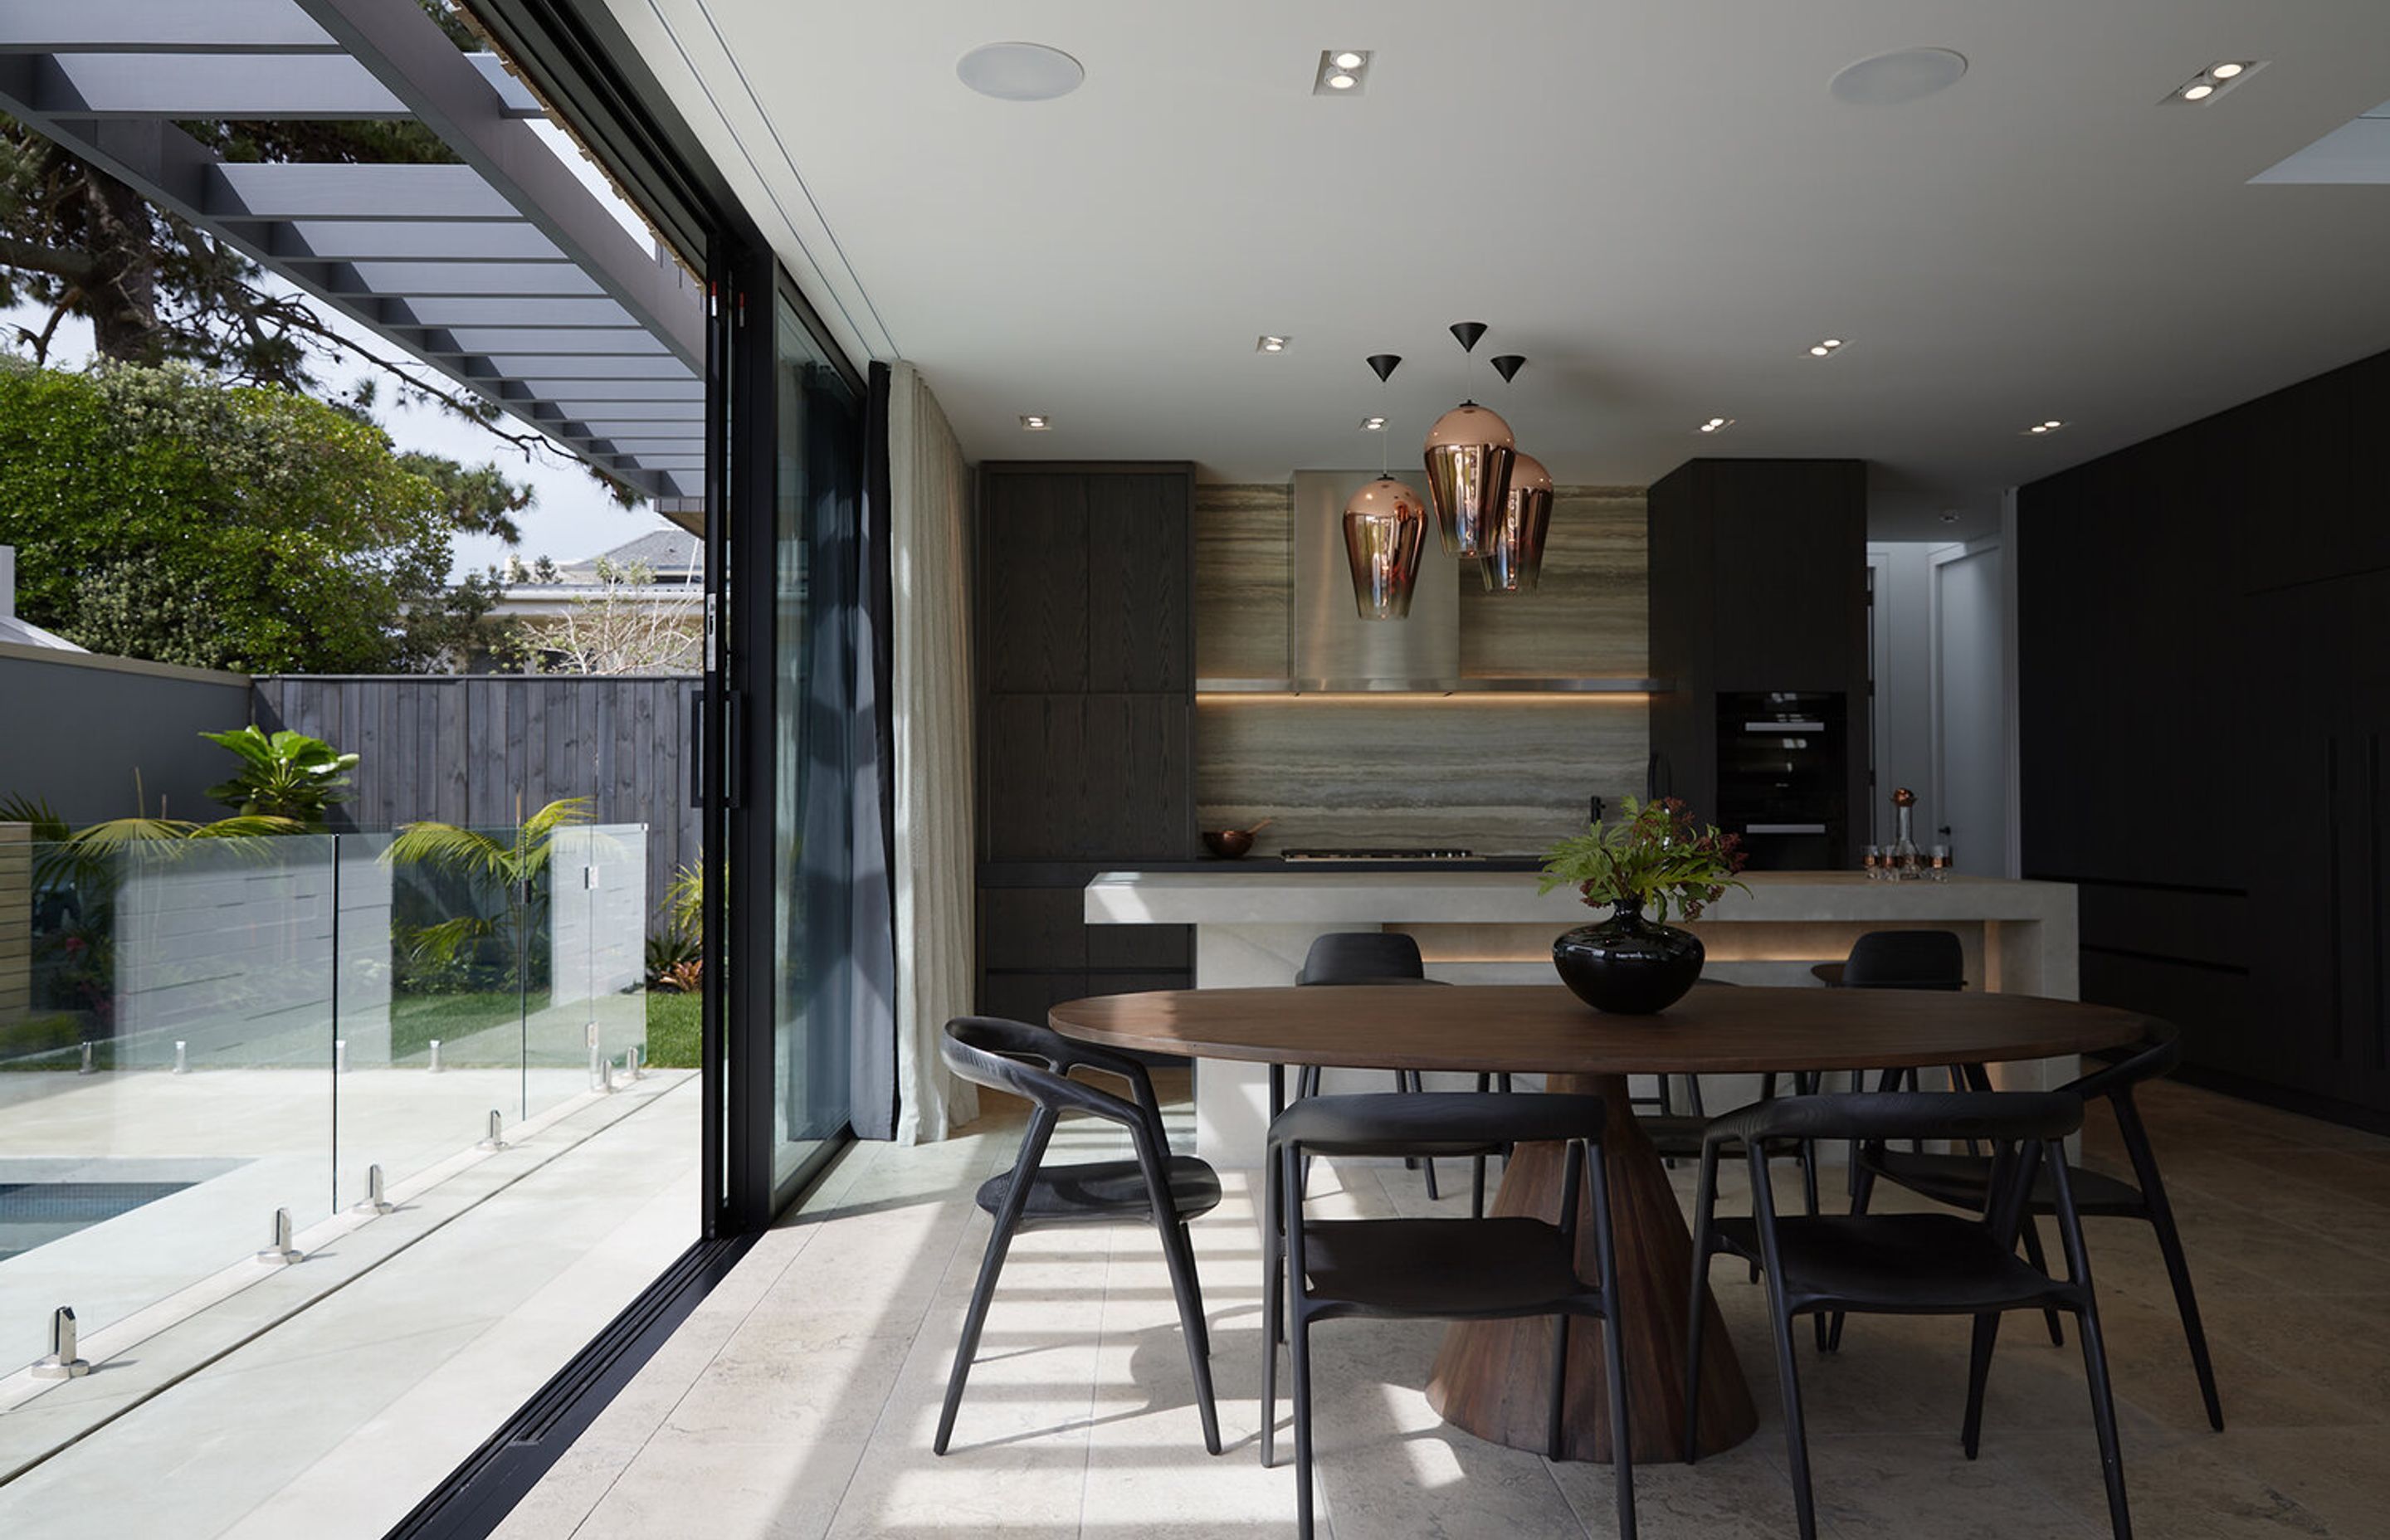 A large, floor-to-ceiling sliding door creates seamless indoor-outdoor flow.